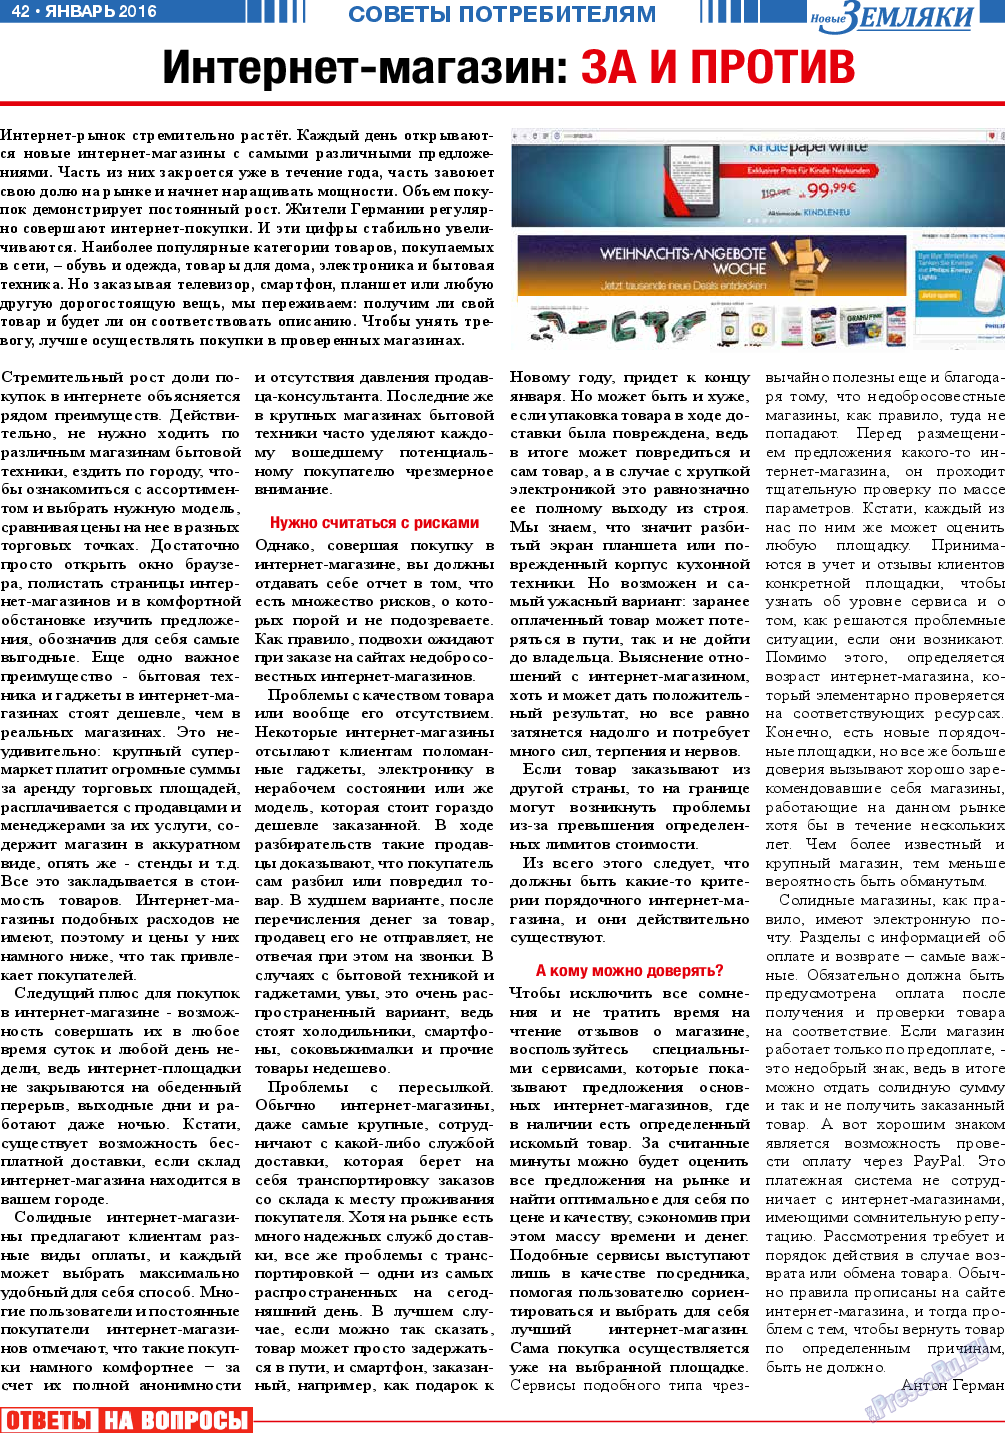 Новые Земляки, газета. 2016 №1 стр.42